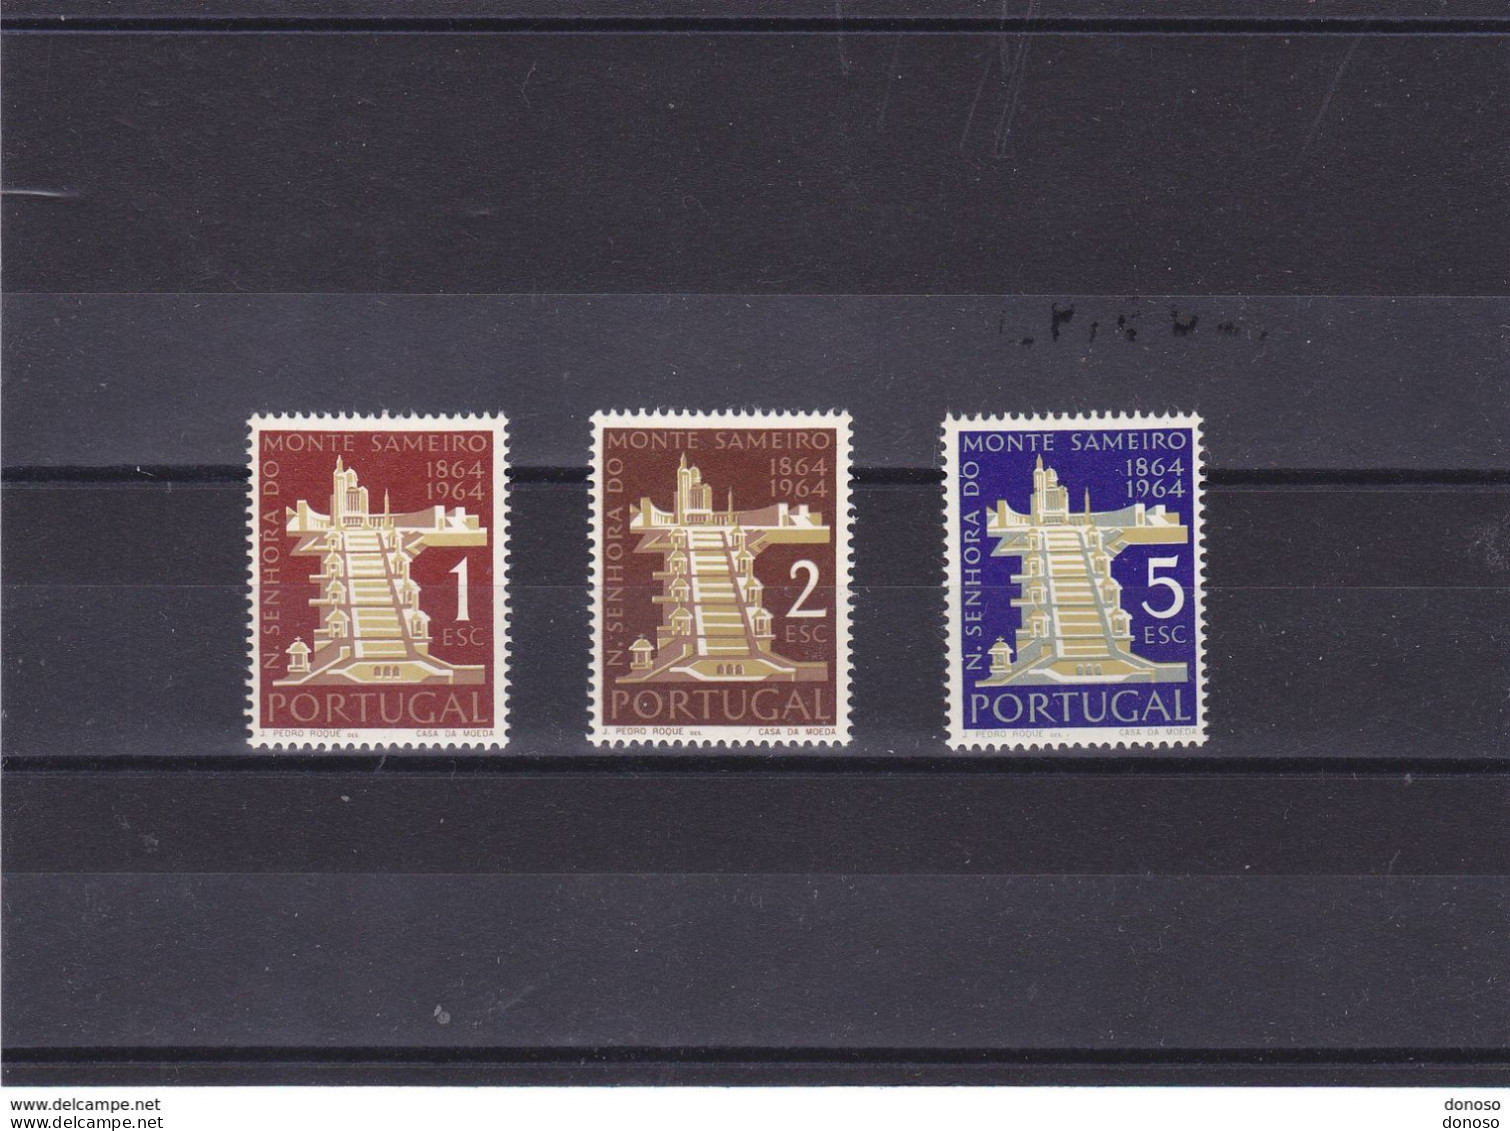 PORTUGAL 1964 SAMEIRO Yvert 941-943, Michel 960-962 NEUF** MNH Cote 5,50 Euros - Nuovi